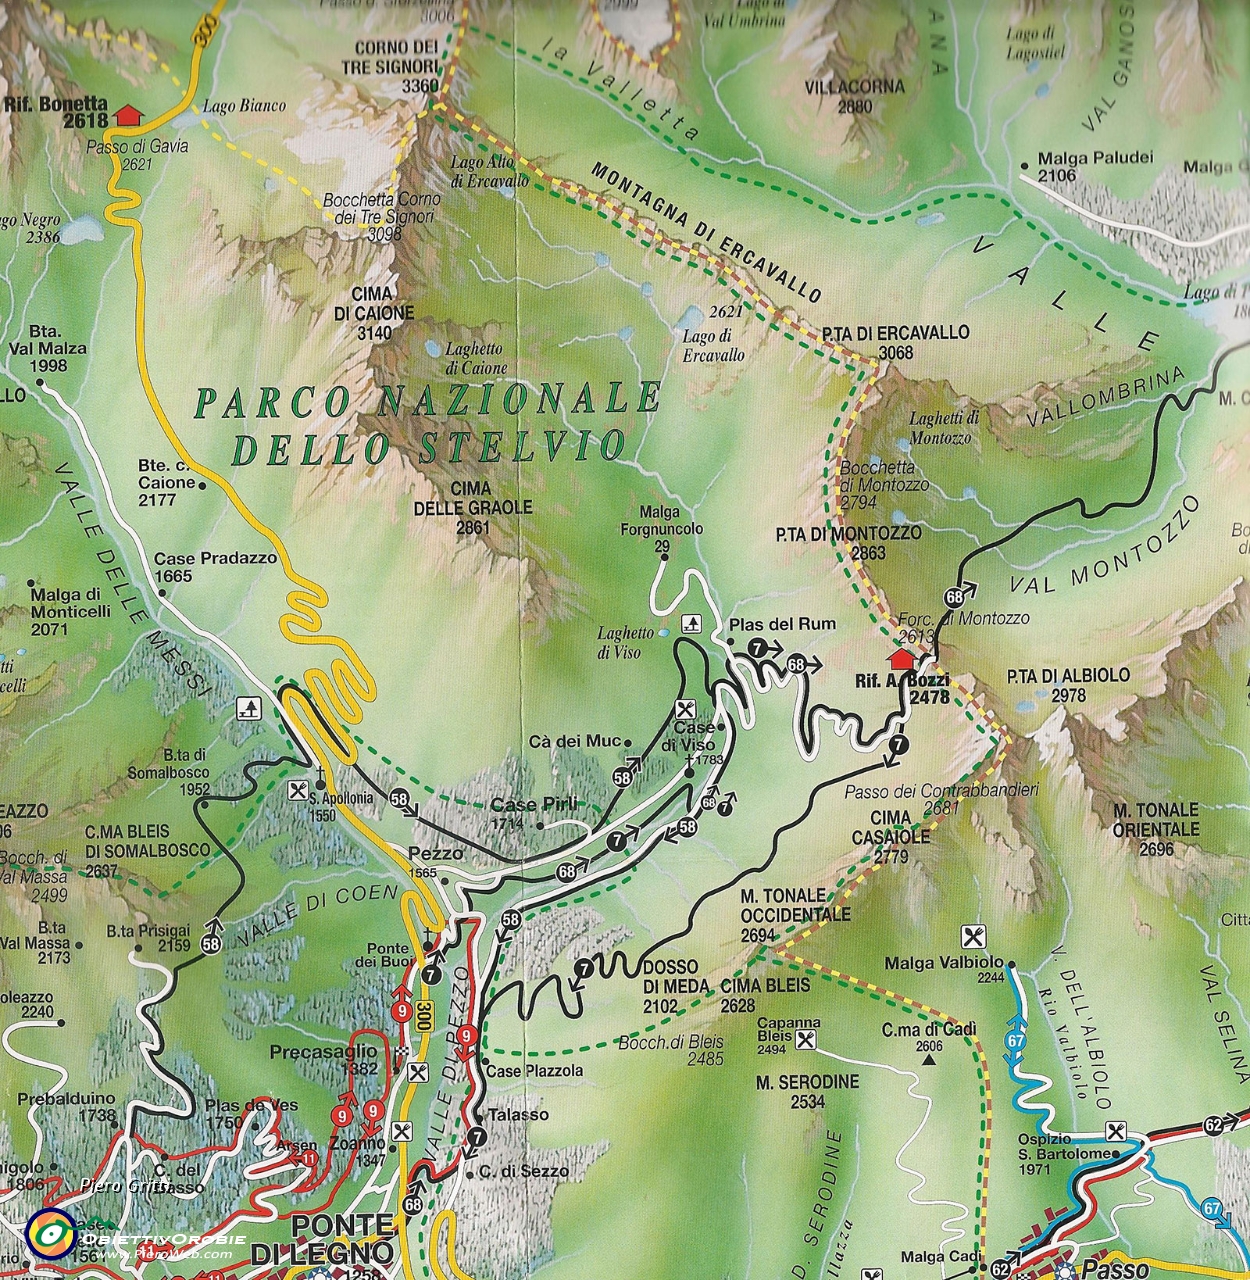 03 Cartina zona Rif. Bozzi (2478 m.) nel Parco N. dello Stelvio.jpg